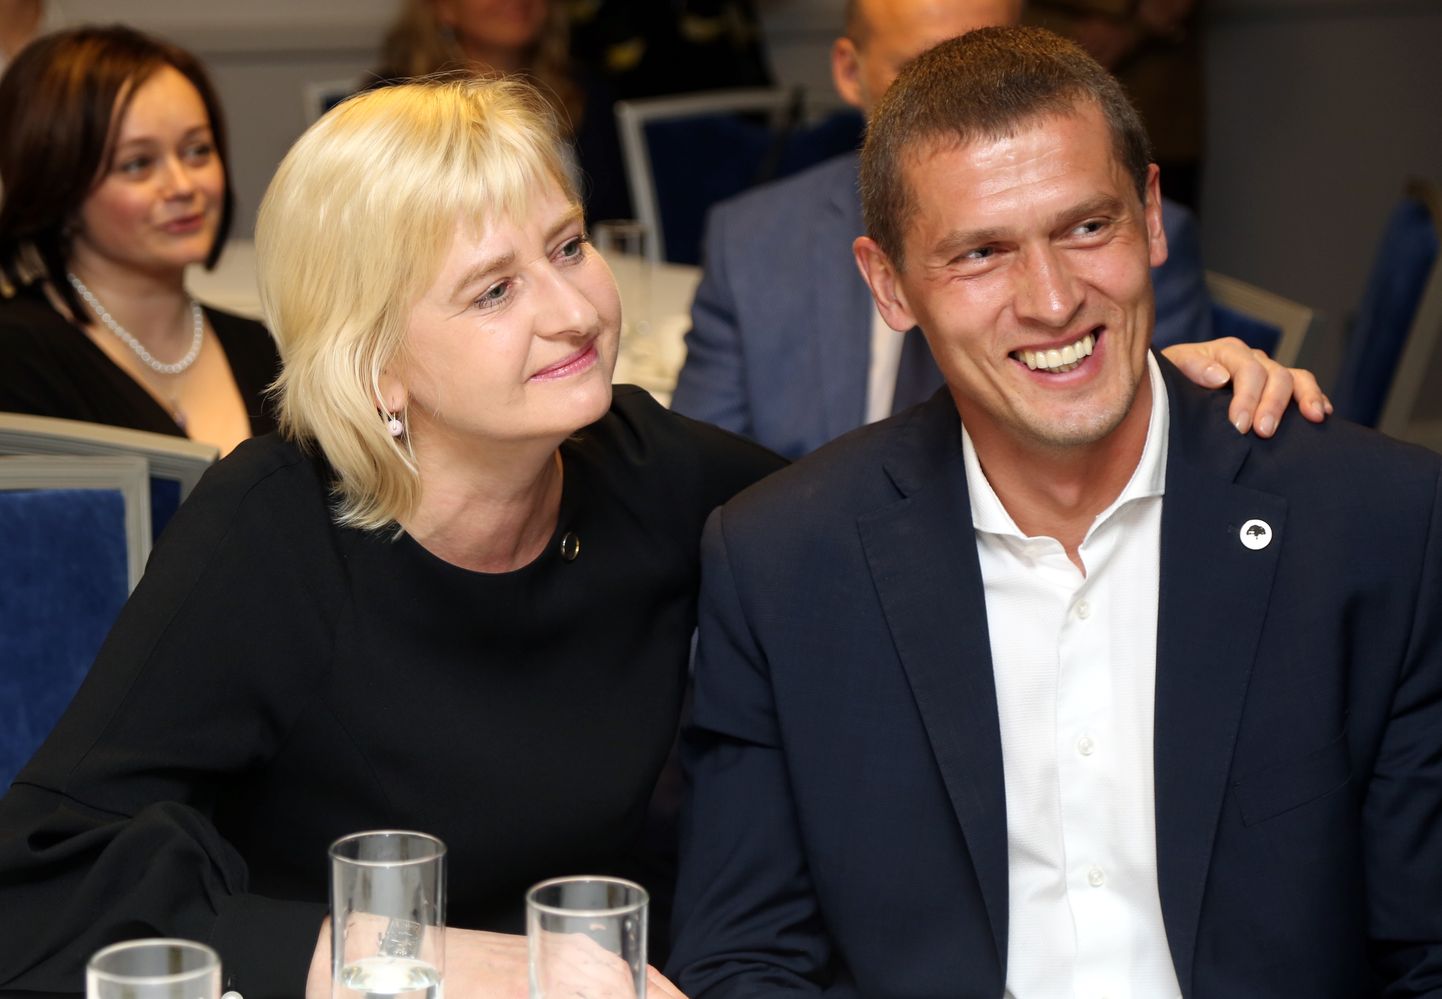 Jaunās konservatīvās partijas (JKP) līderi Saeimas vēlēšanās Juta Strīķe un Juris Jurašs sagaida 13. Saeimas vēlēšanu rezultātus.